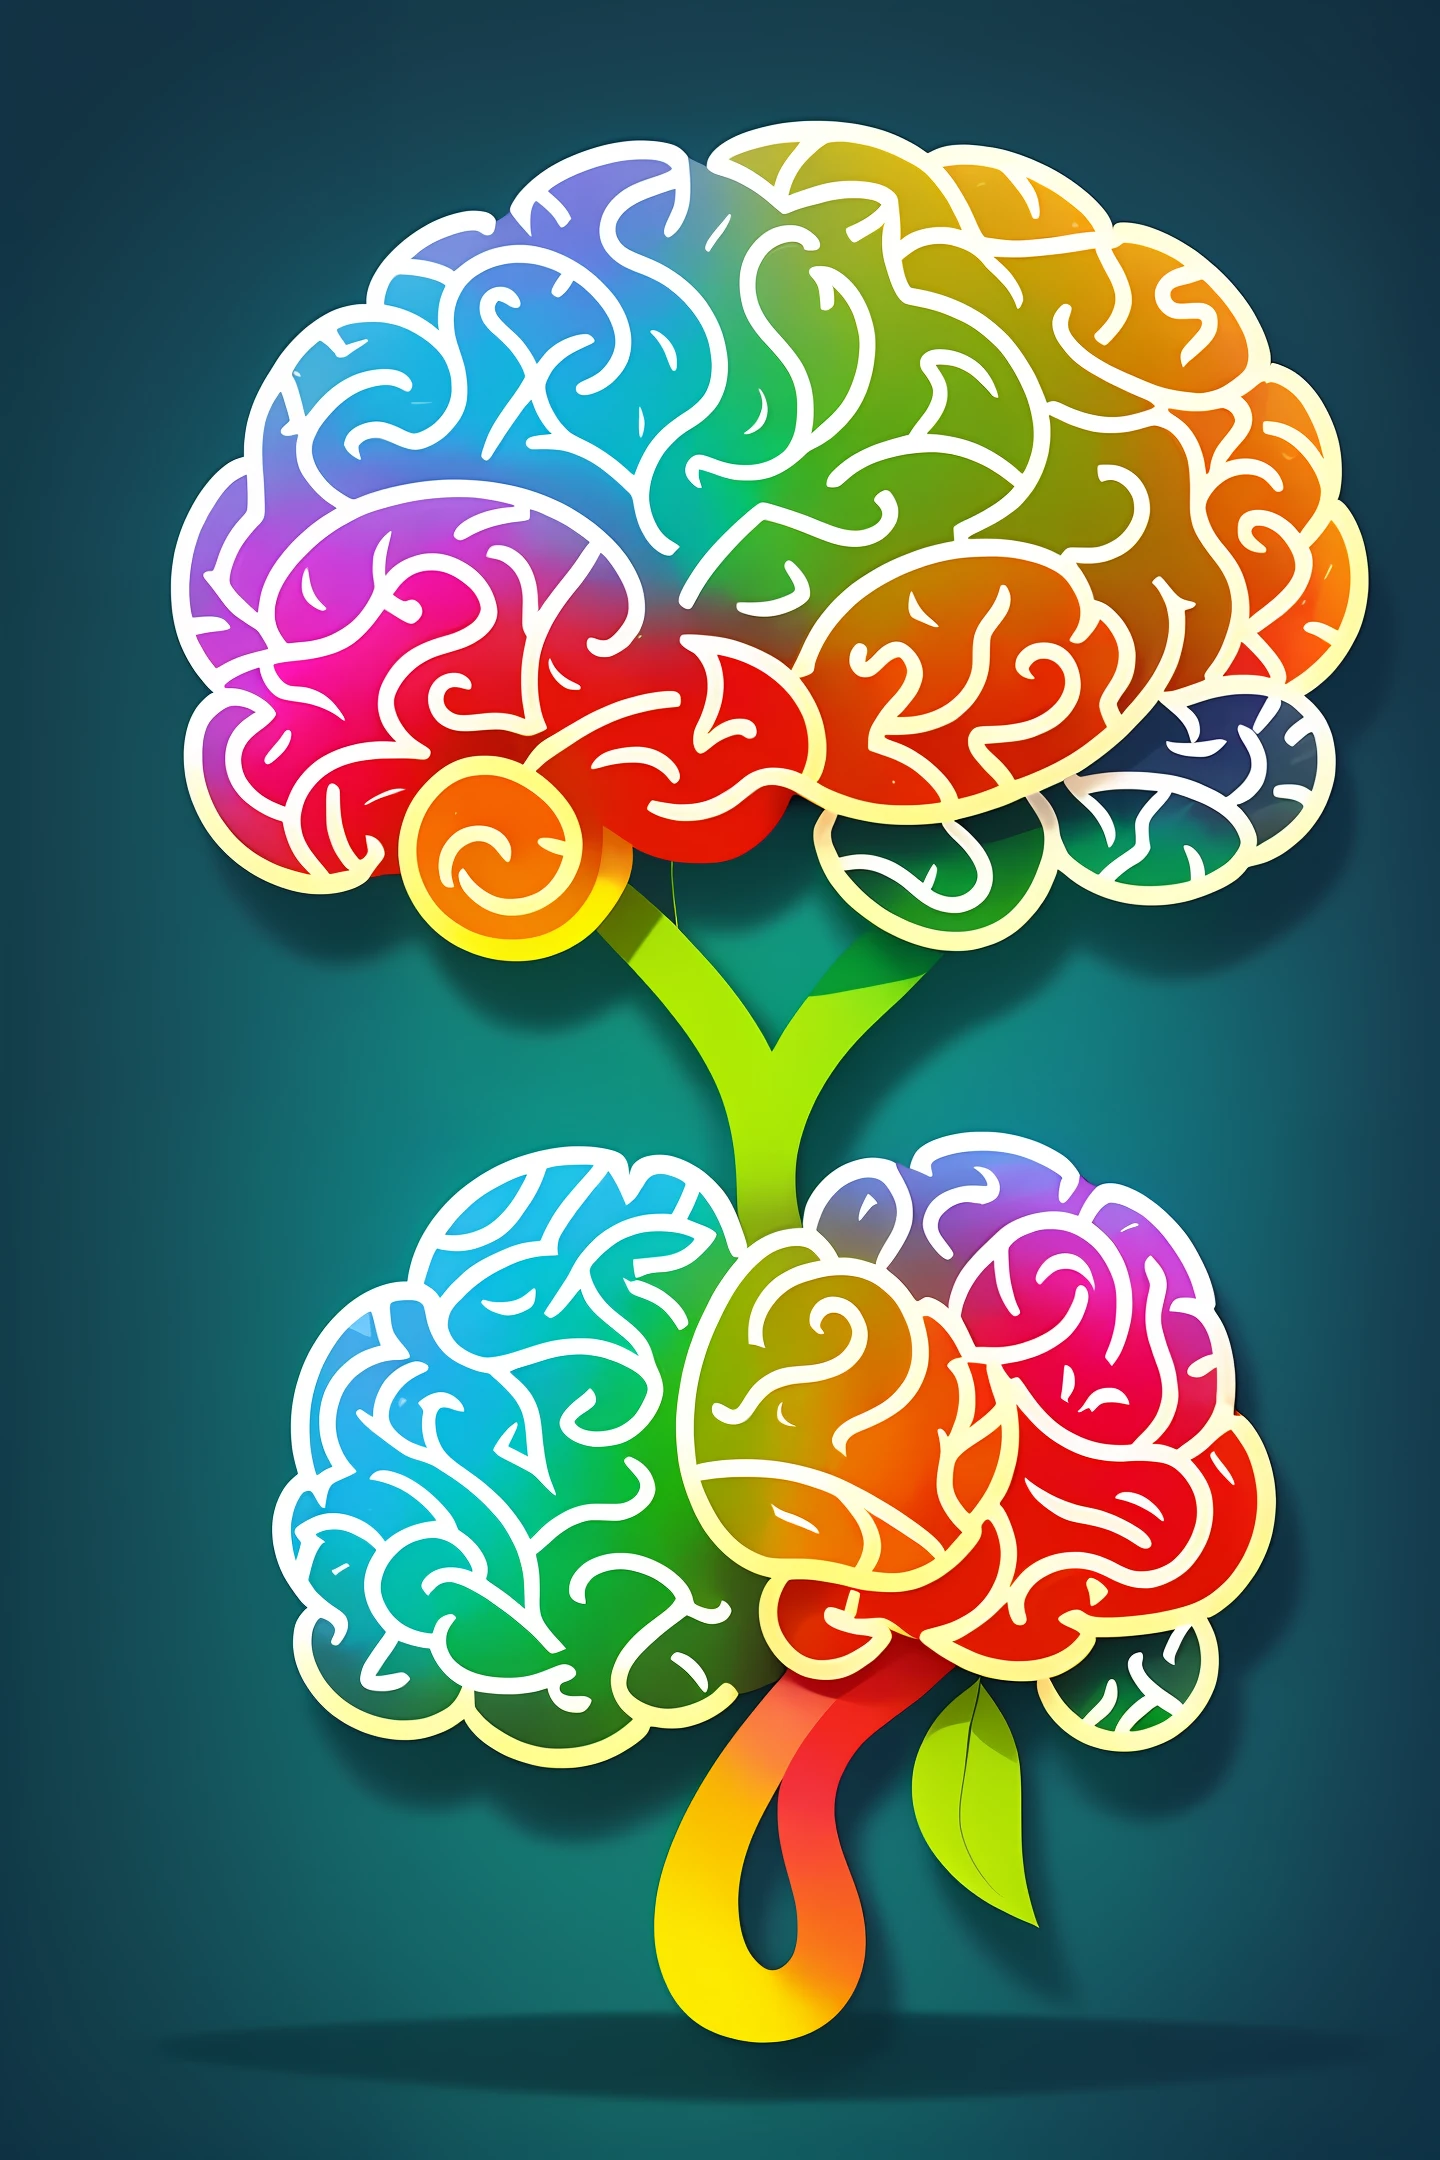 значок — стилизованный мозг, со сглаженными складками и округлыми формами. Он символизирует интеллектуальное любопытство и поиск знаний..